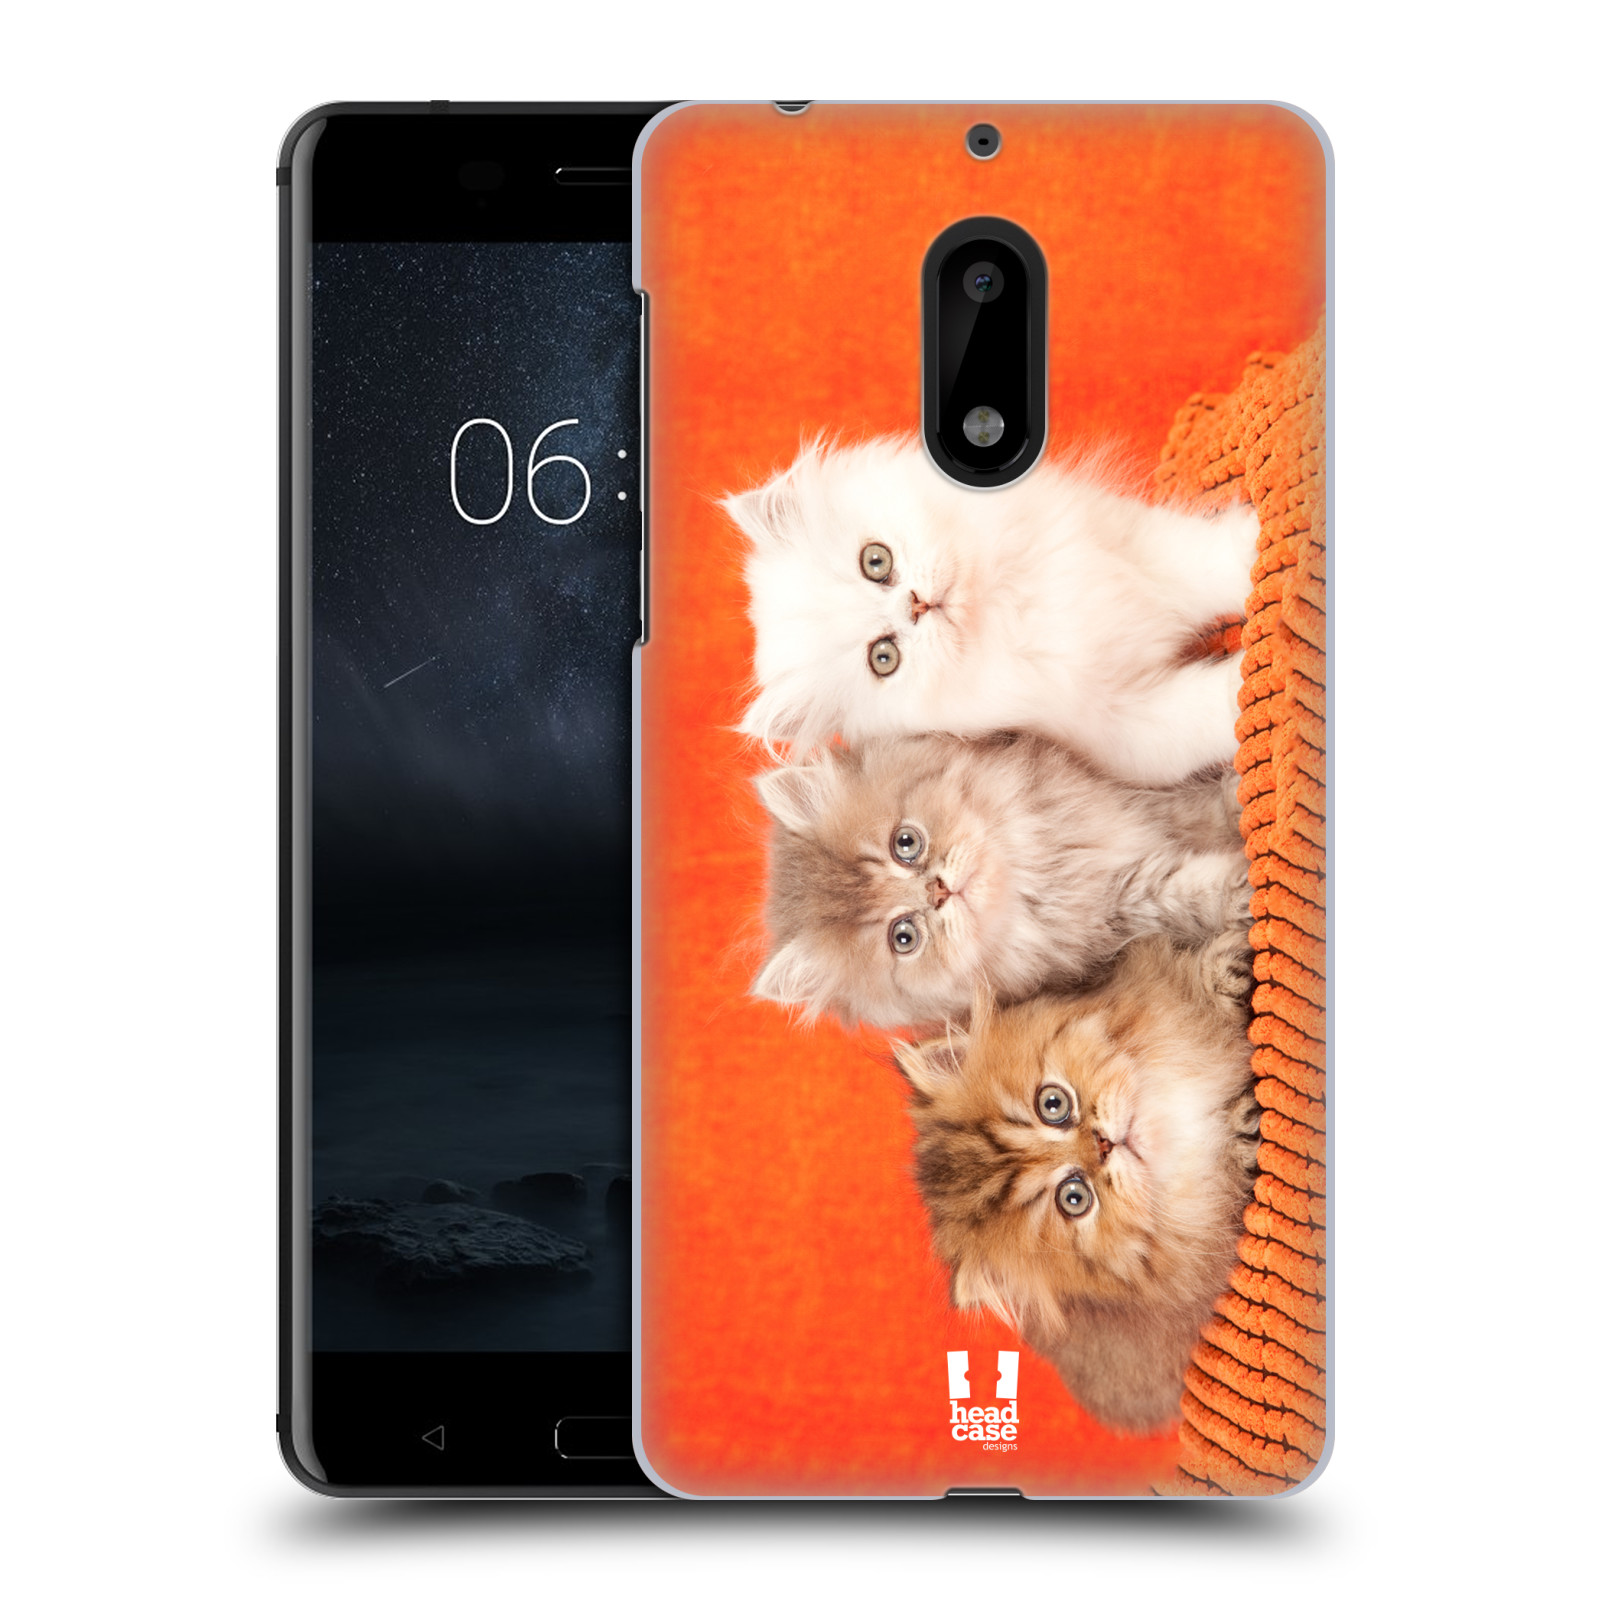 HEAD CASE plastový obal na mobil Nokia 6 vzor Kočičky koťata foto 3 kočky